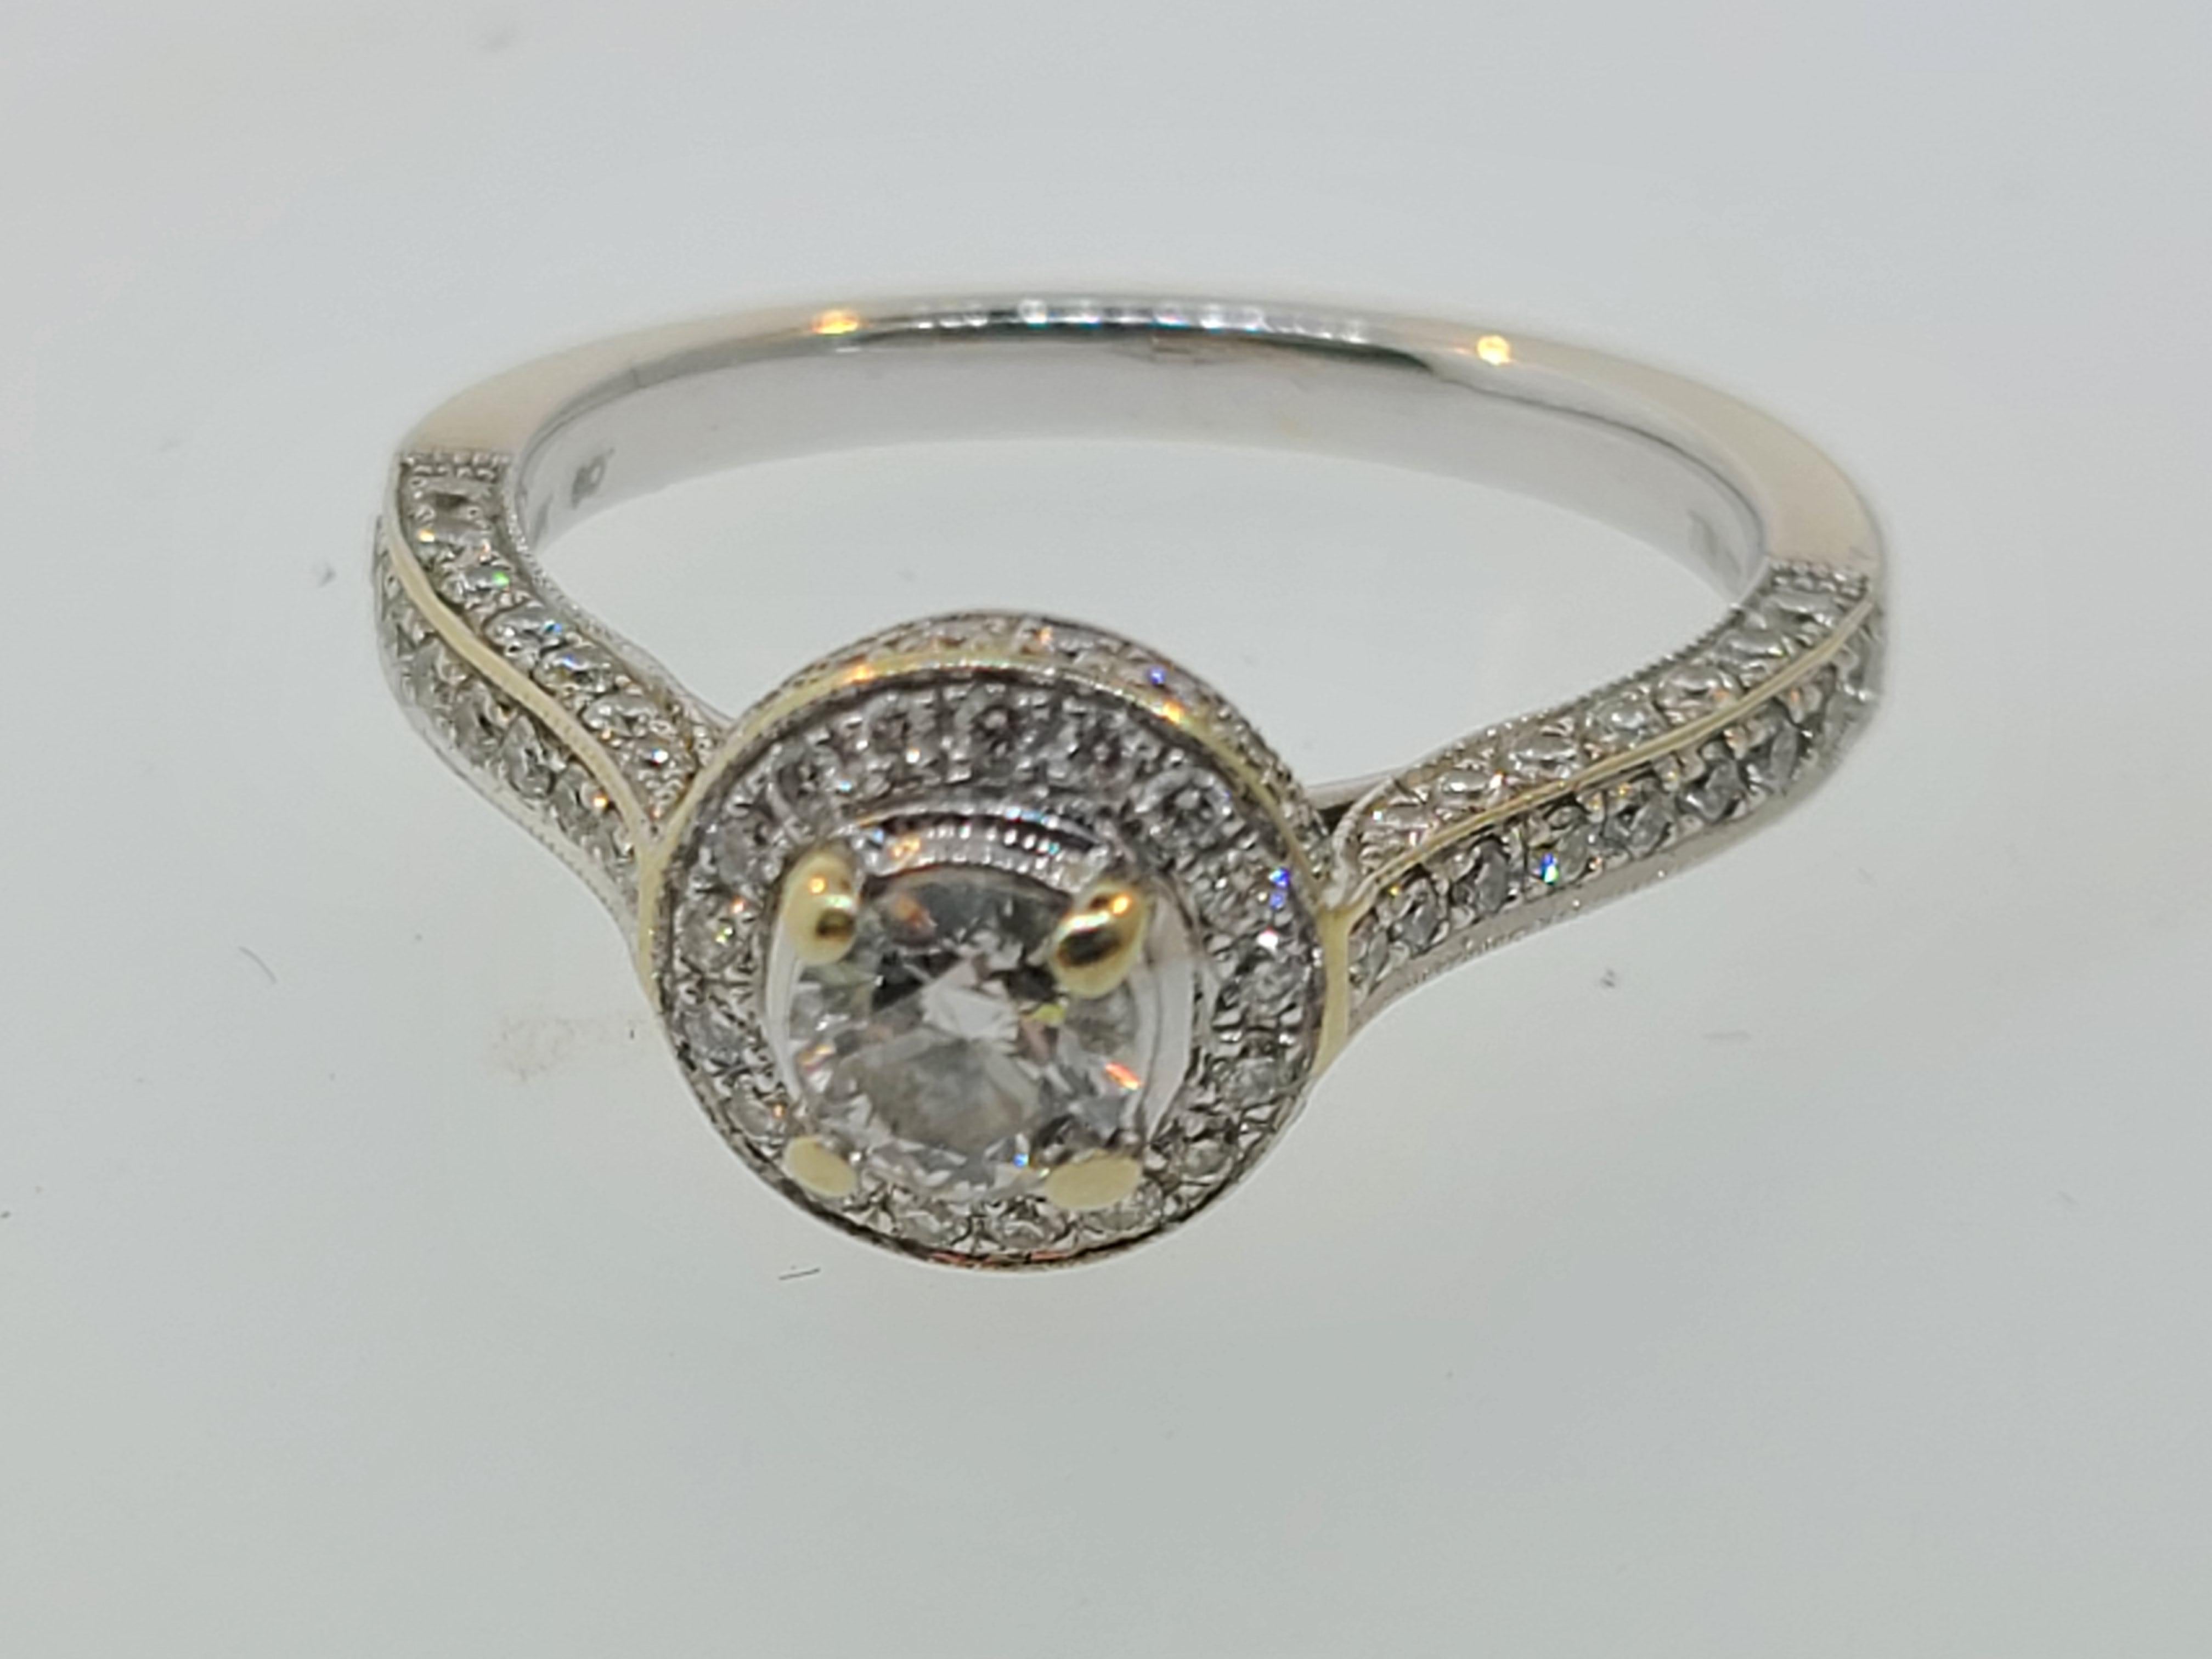 Dieser moderne Halo-Diamant-Verlobungsring ist in 14 Karat Weißgold mit einem 4,3 mm großen Hauptstein und Akzentdiamanten mit einem Gesamtgewicht von 7/8ct gefasst.

Ring Größe 6.5 (US)
Das Gesamtgewicht beträgt 3.5 Gramm. 
Die Rhodiumbeschichtung